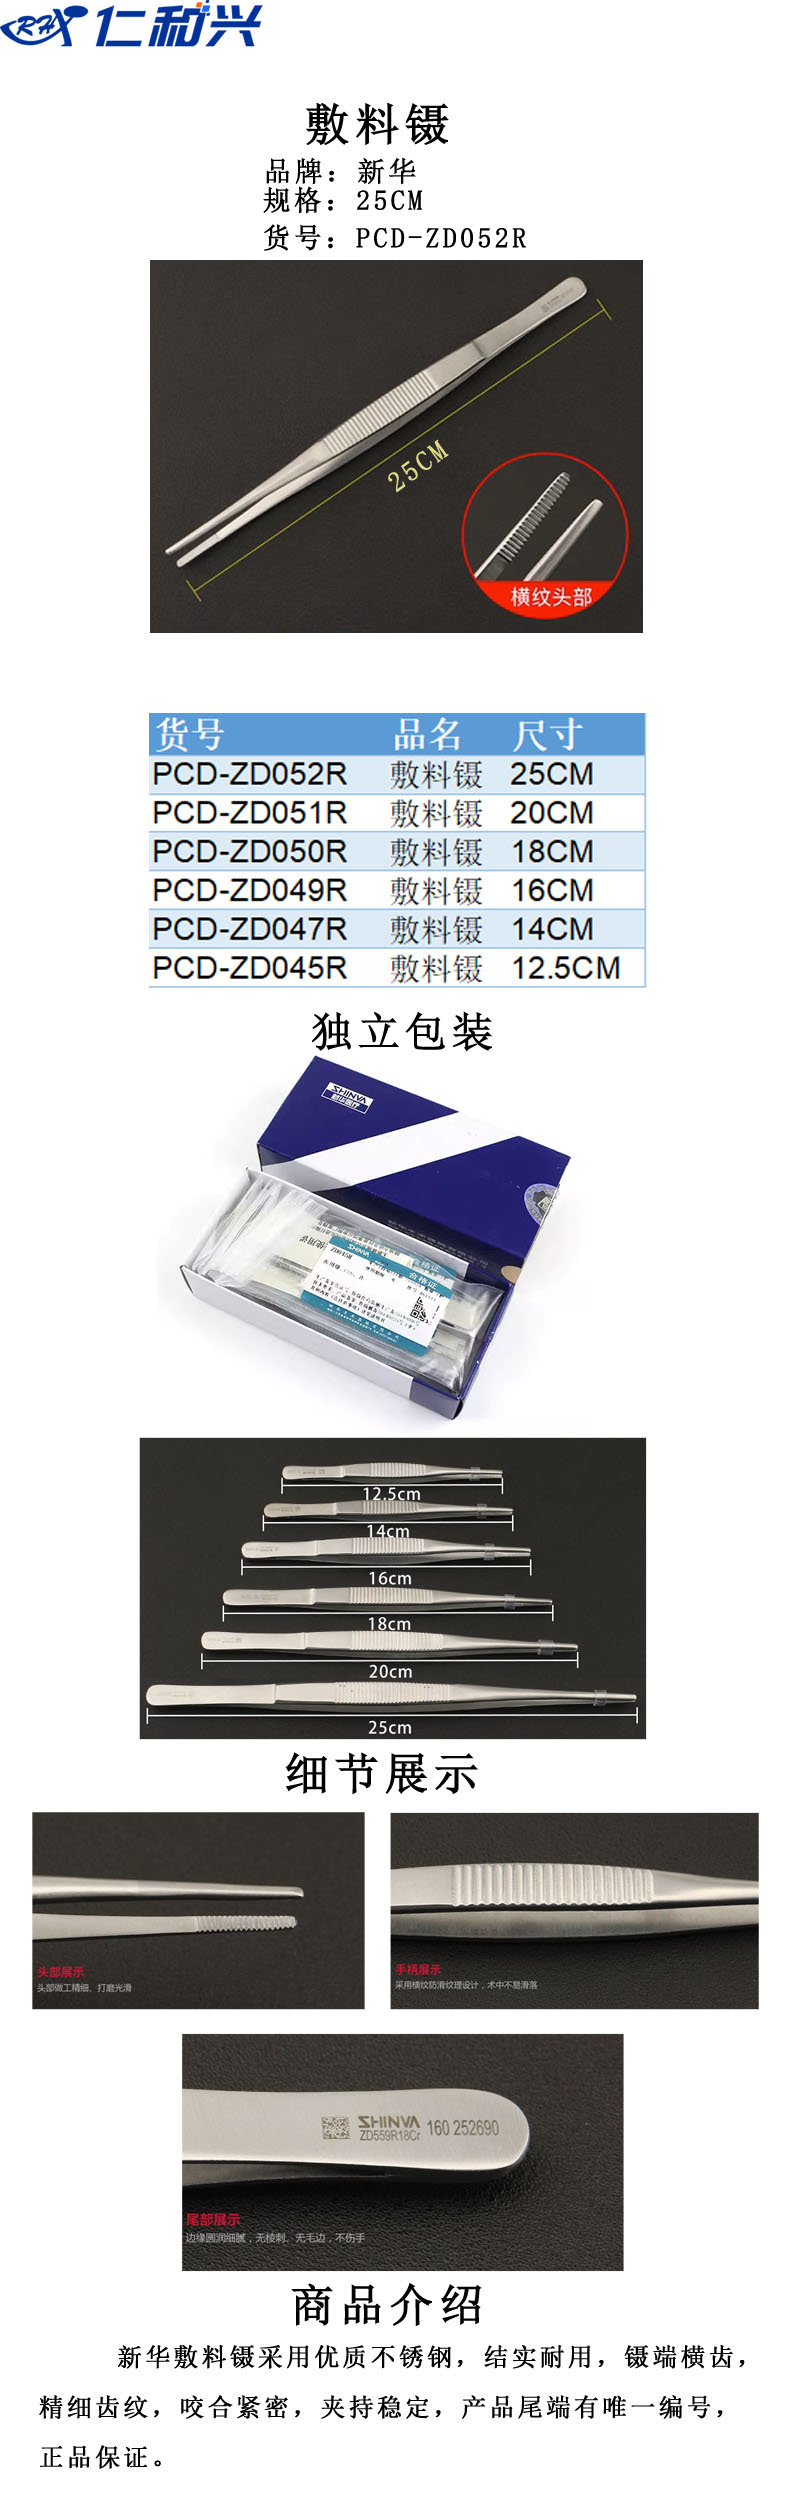 PCD-ZD052R.jpg